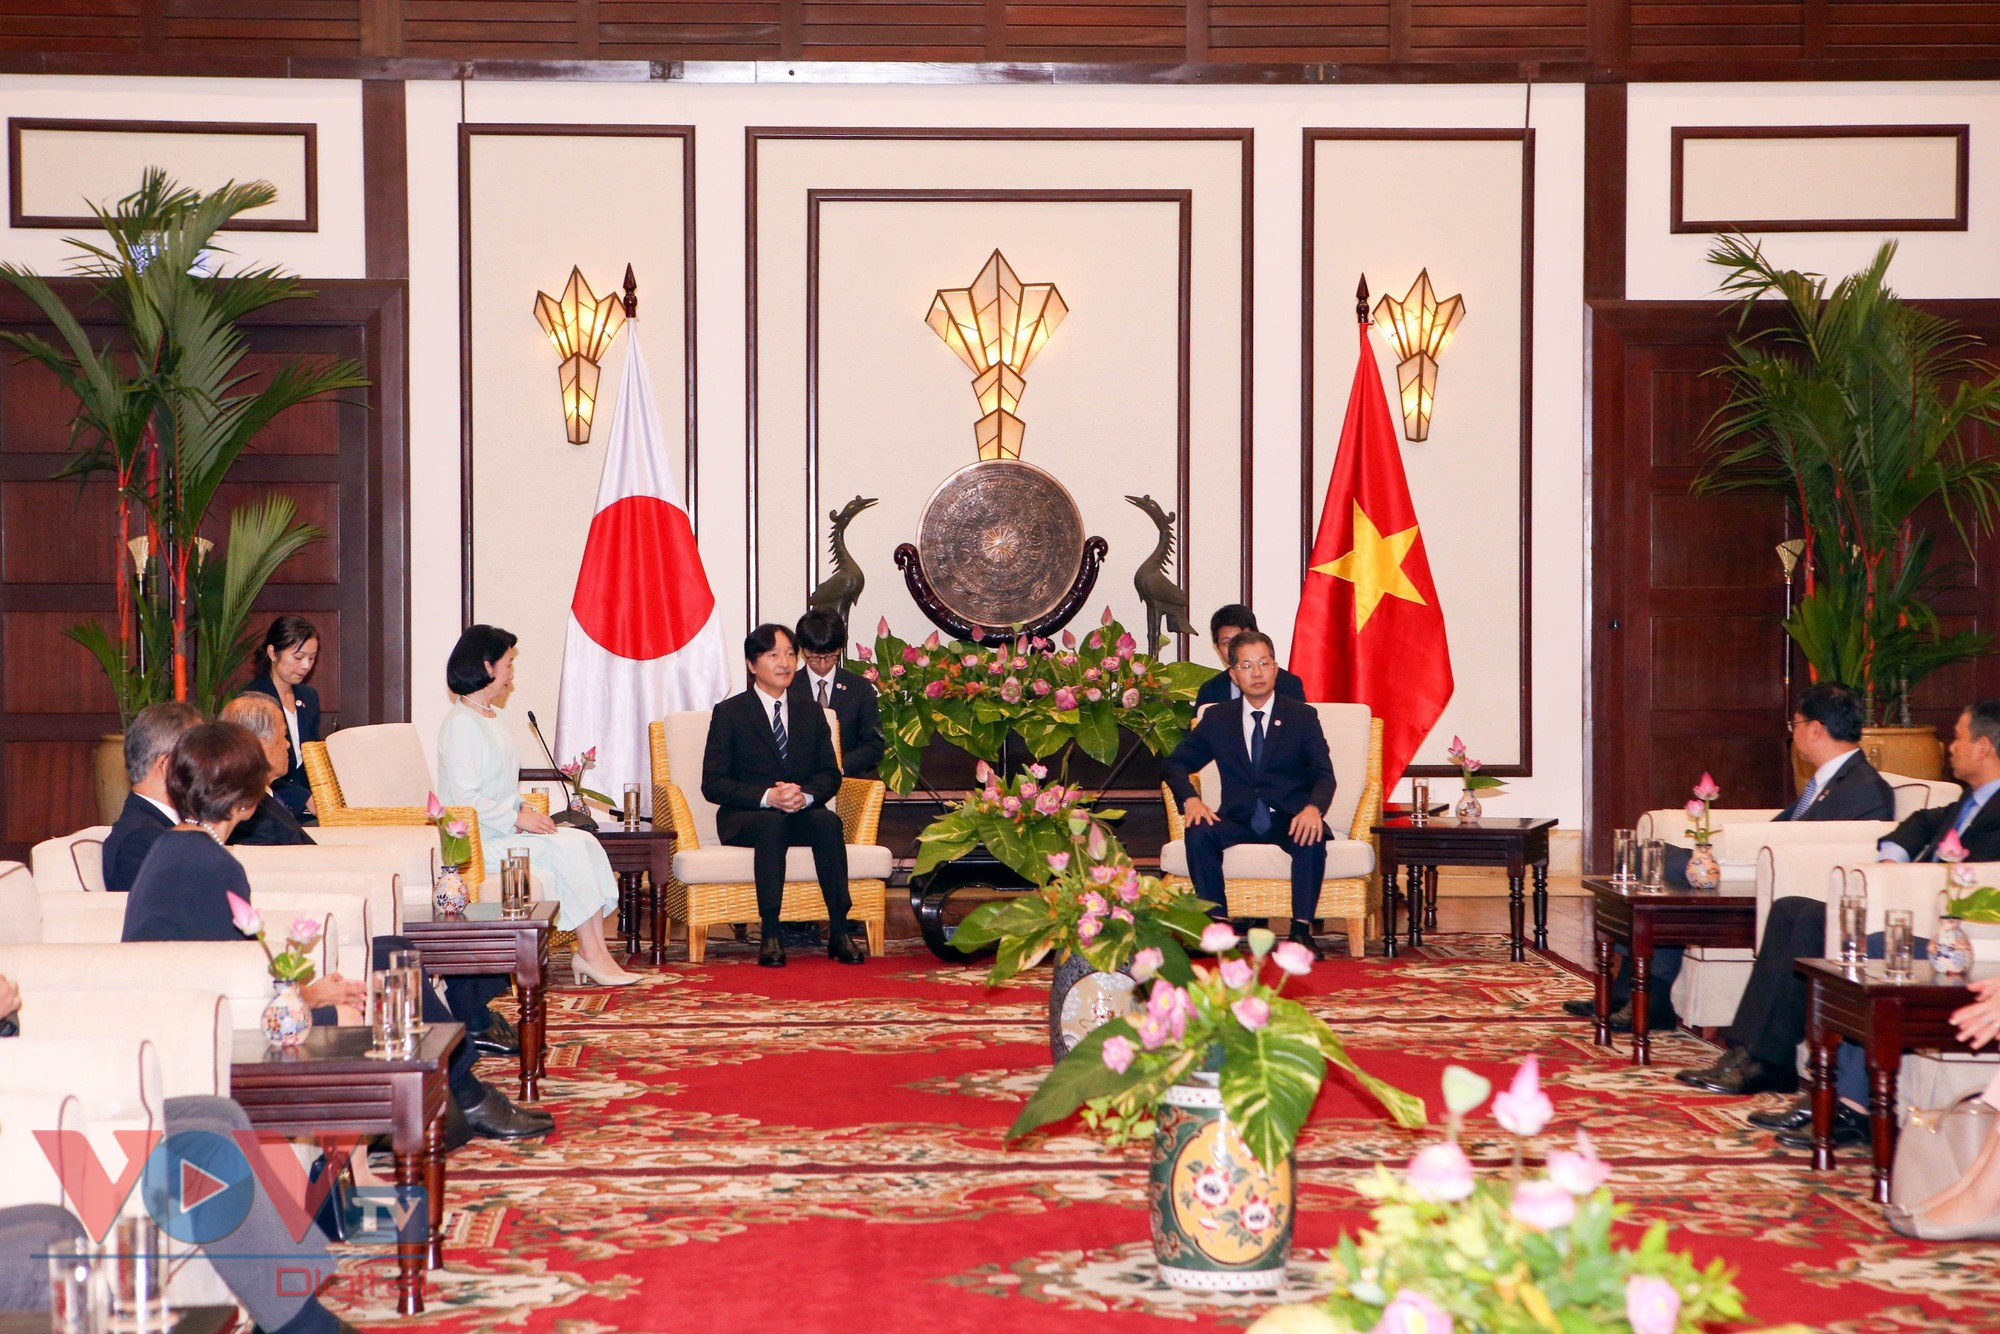 Hoàng Thái tử Nhật Bản và Công nương thăm thành phố Đà Nẵng - Ảnh 1.